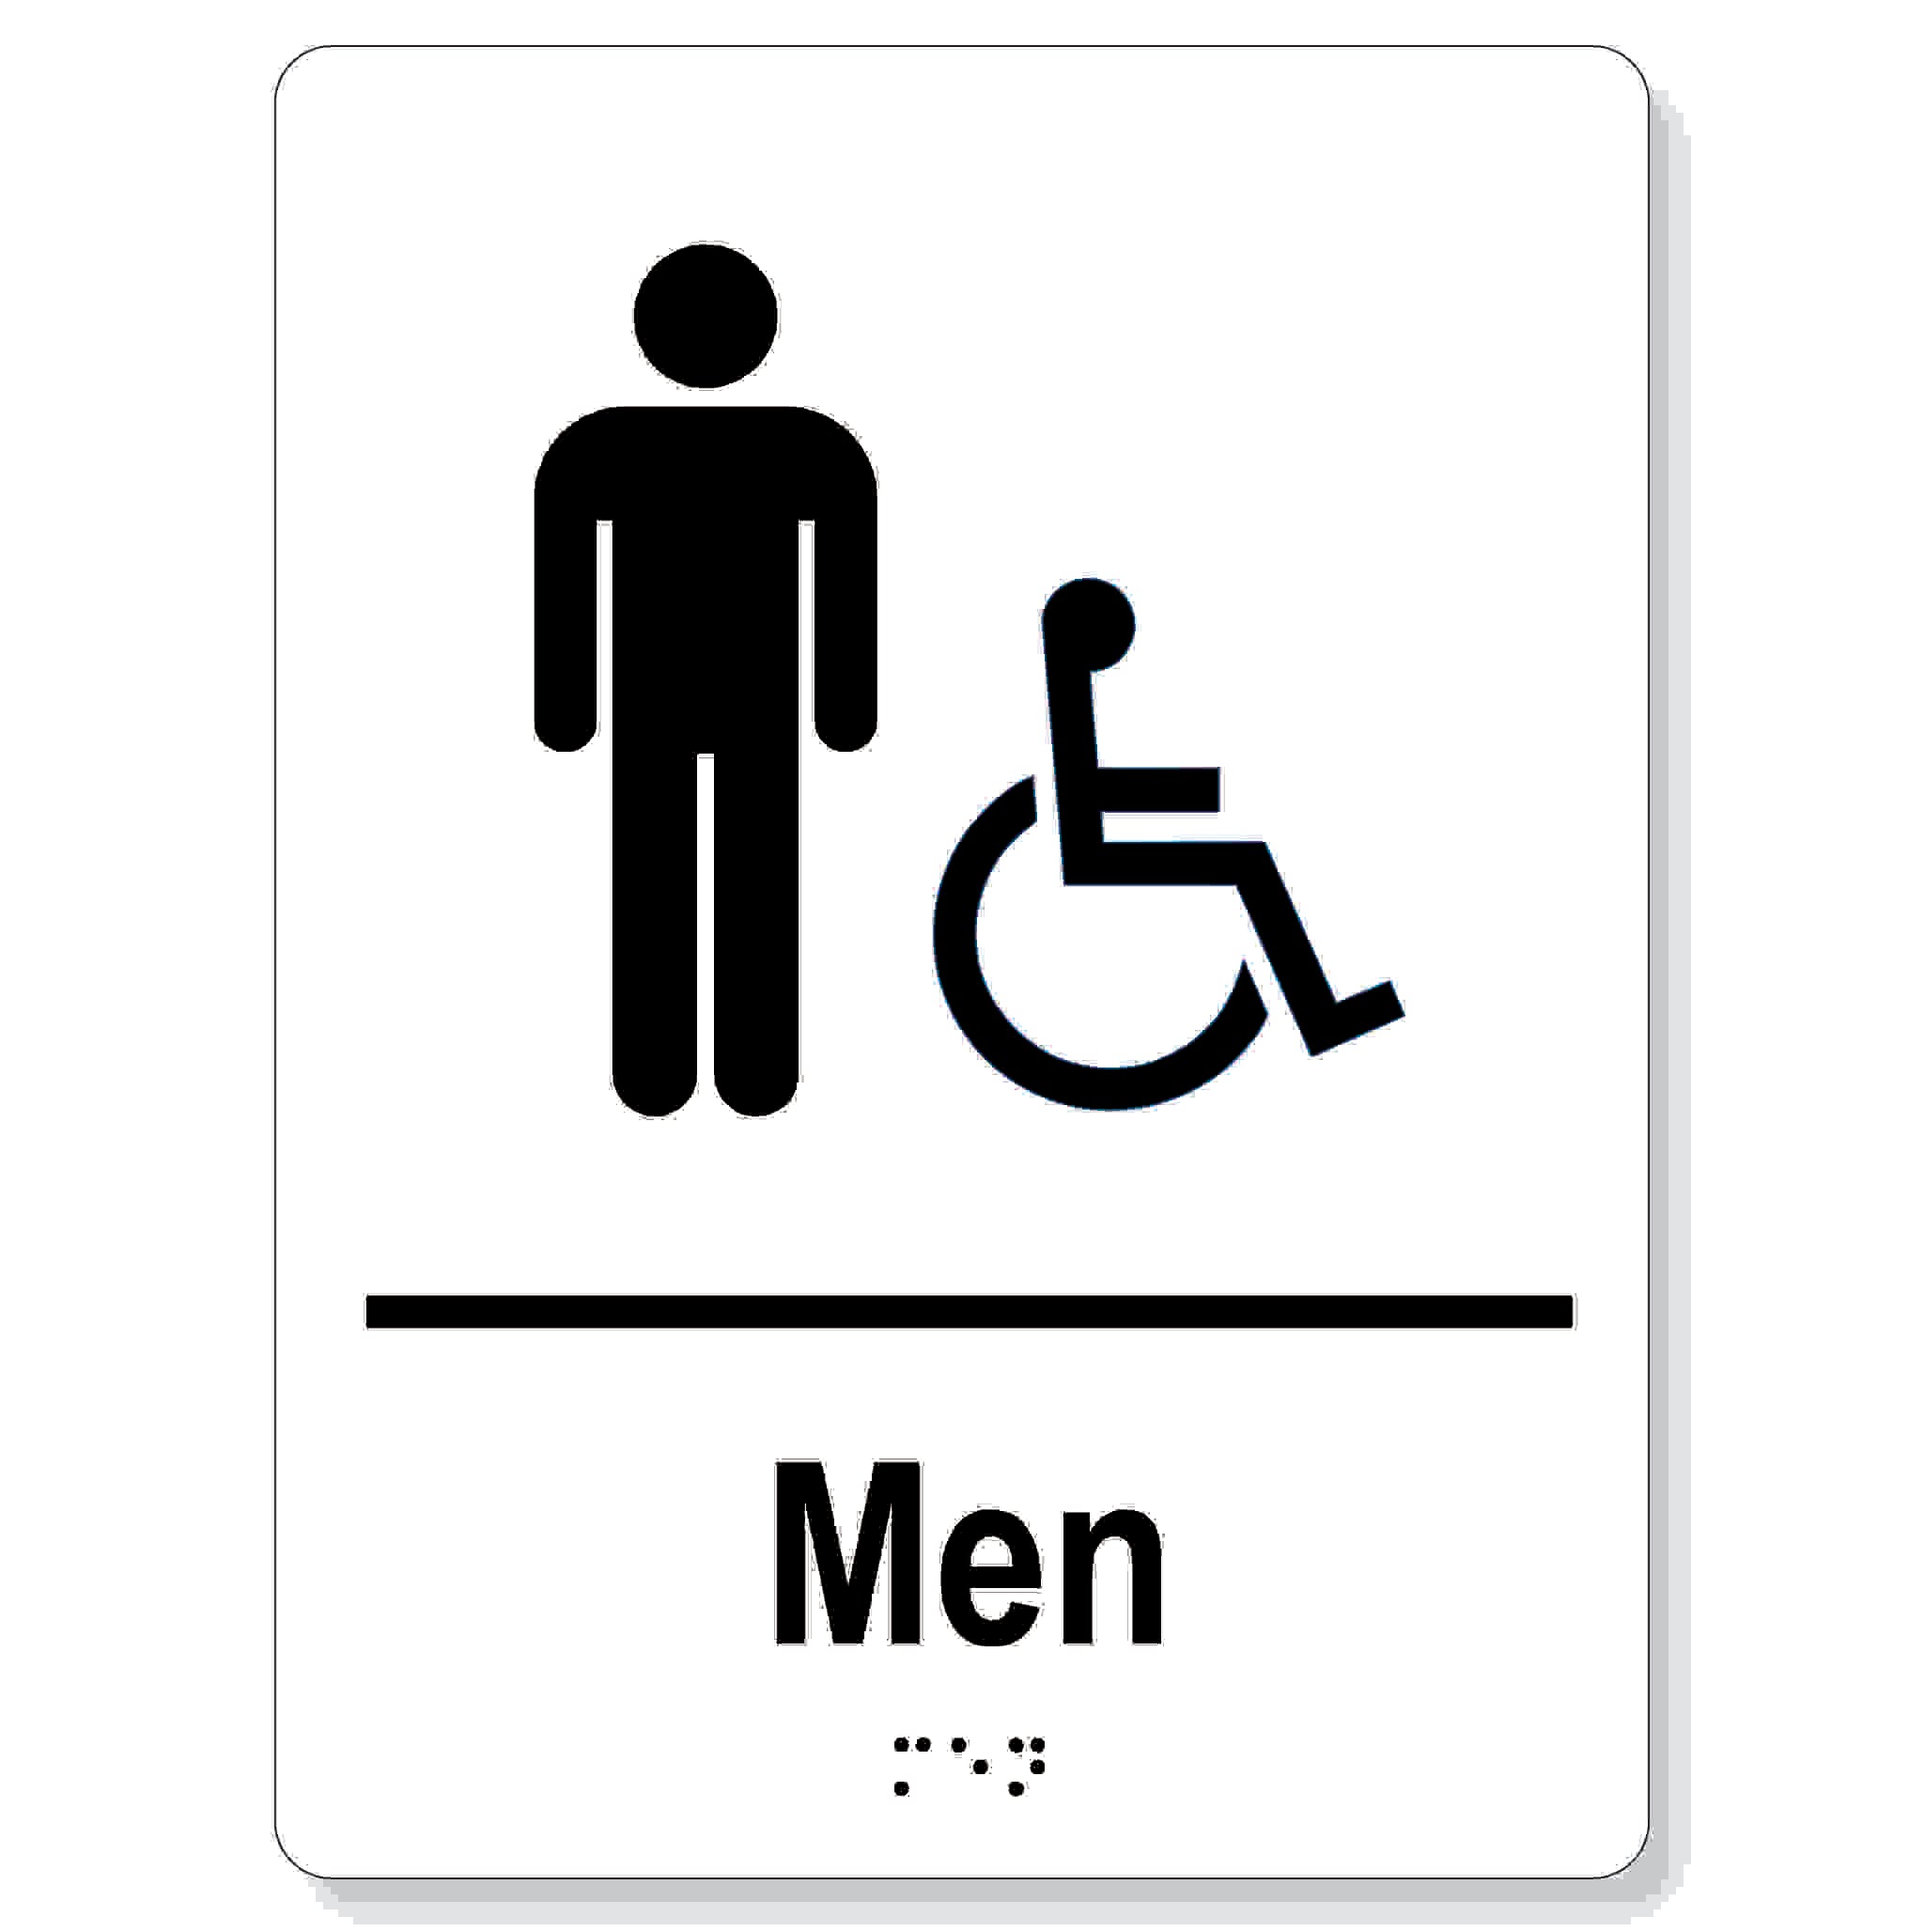 Men accessible washroom sign